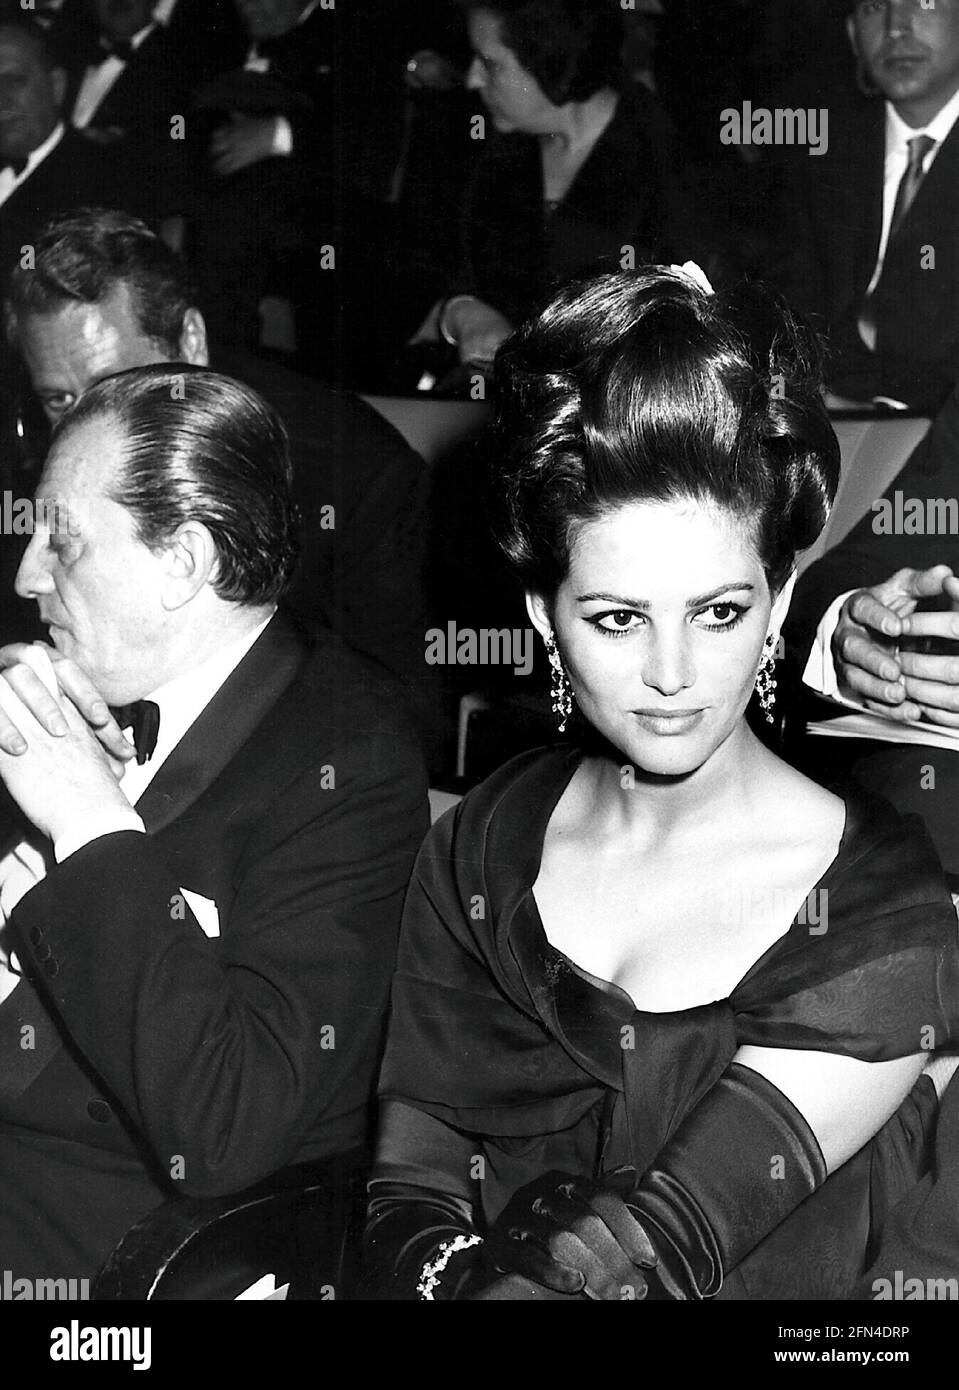 Cardinale, Claudia, * 15.4.1938, actrice italienne, avec Luchino Visconti, Assis, années 1960, femme, DROITS-SUPPLÉMENTAIRES-AUTORISATION-INFO-NON-DISPONIBLE Banque D'Images